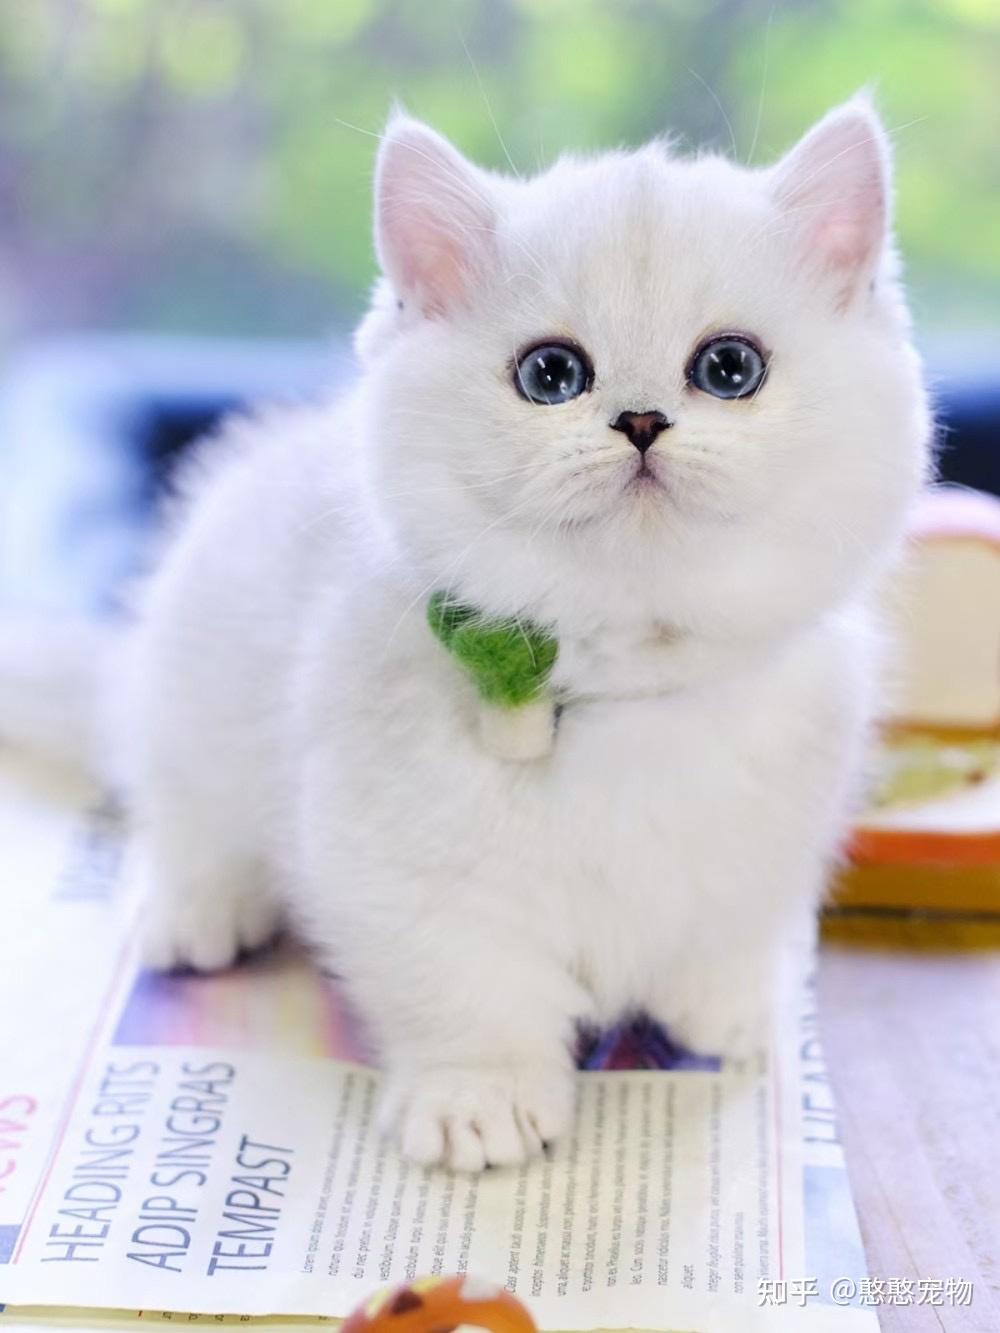 毛茸茸的曼基康猫咪到底有多可爱?